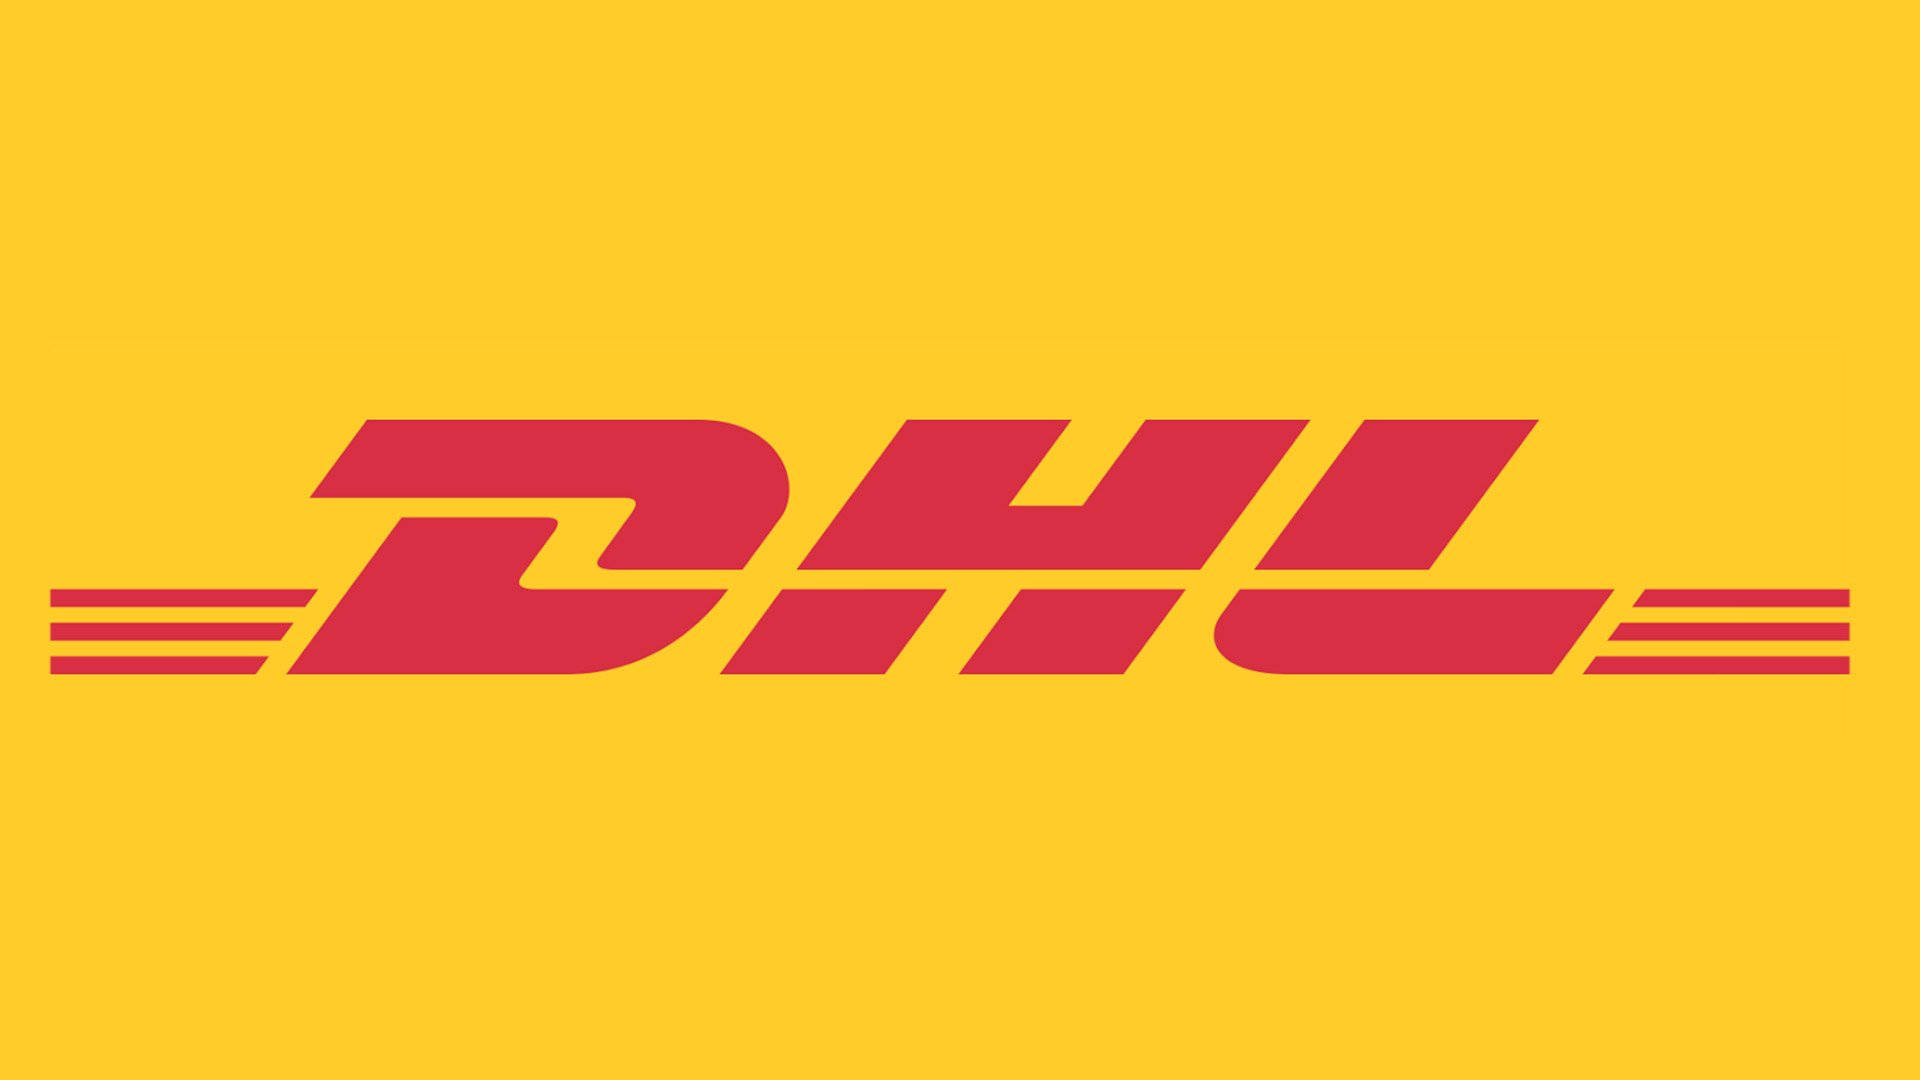 Iconic Dhl Logo Background